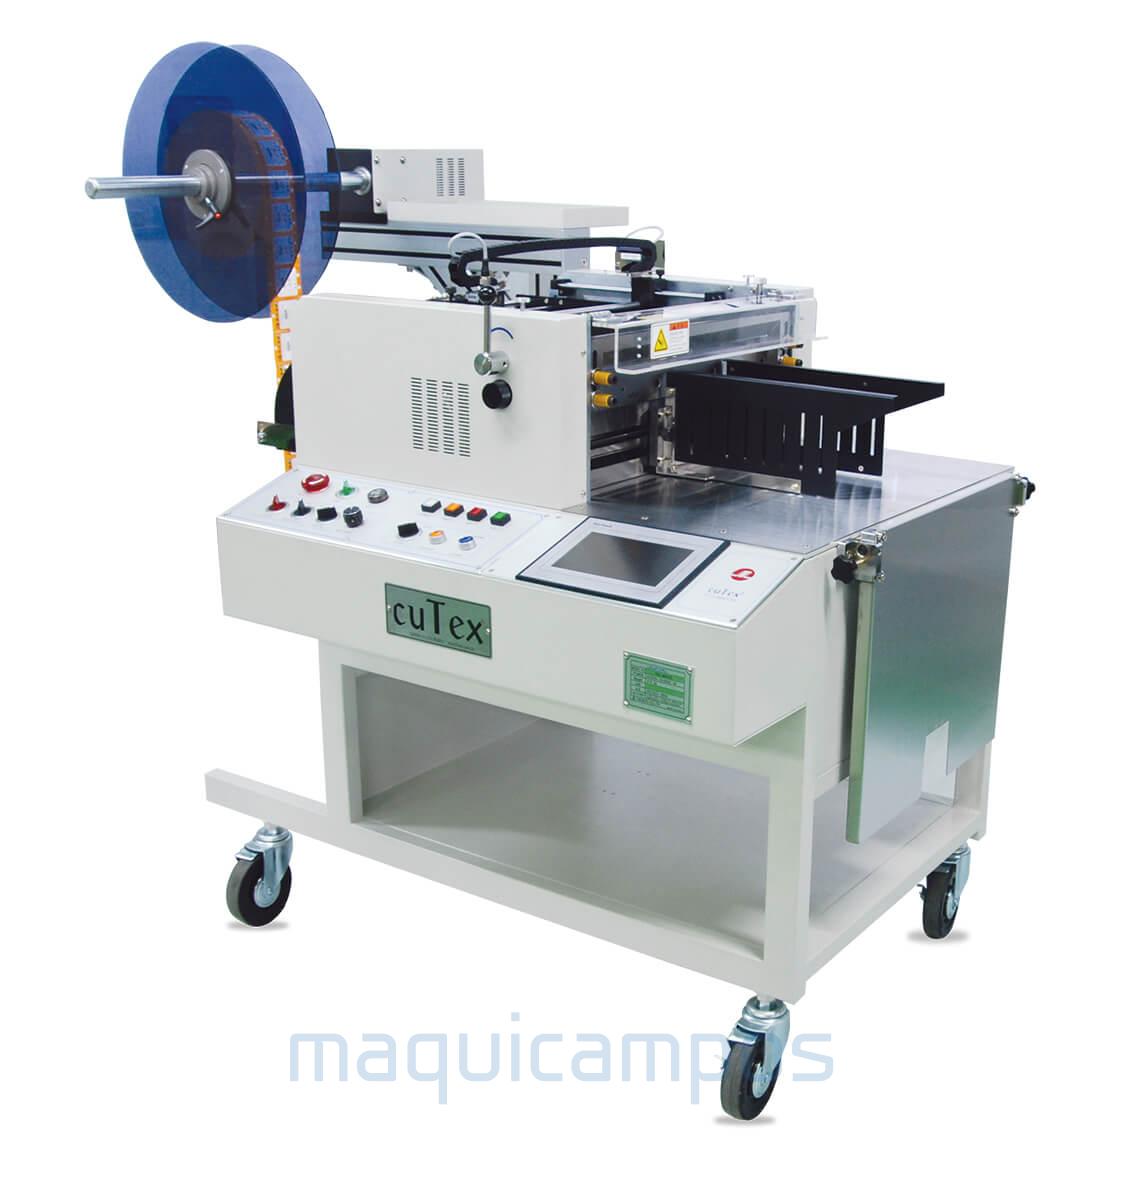 Cutex TFC-460TS4 High Speed Cold Cutting Machine